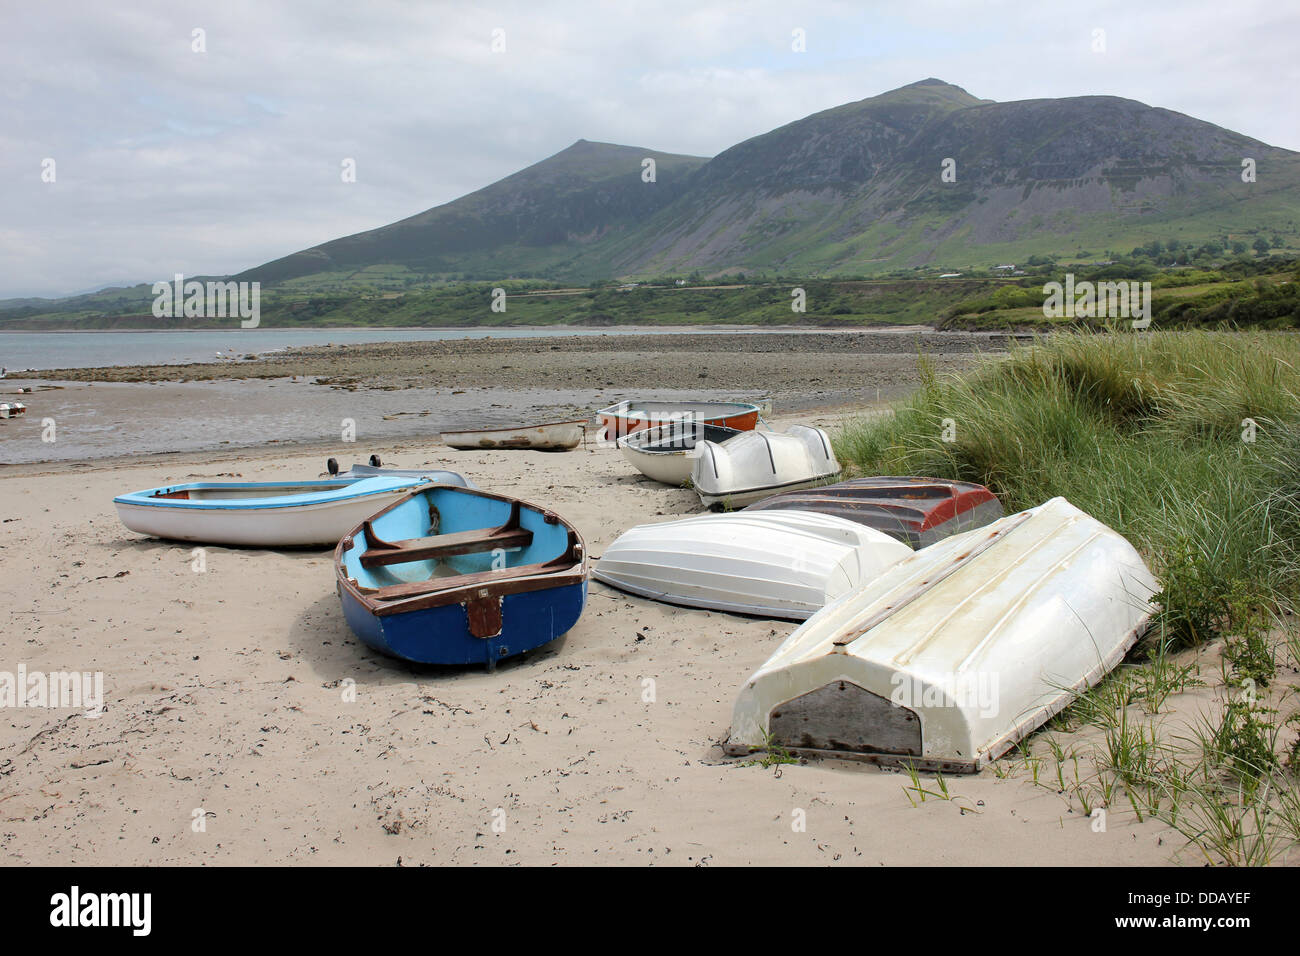 Bateaux hissé sur la plage à Trefor, qui se trouve au pied de l'Yr Eifl, le plus haut sur la péninsule de Llyn collines, au Pays de Galles Banque D'Images